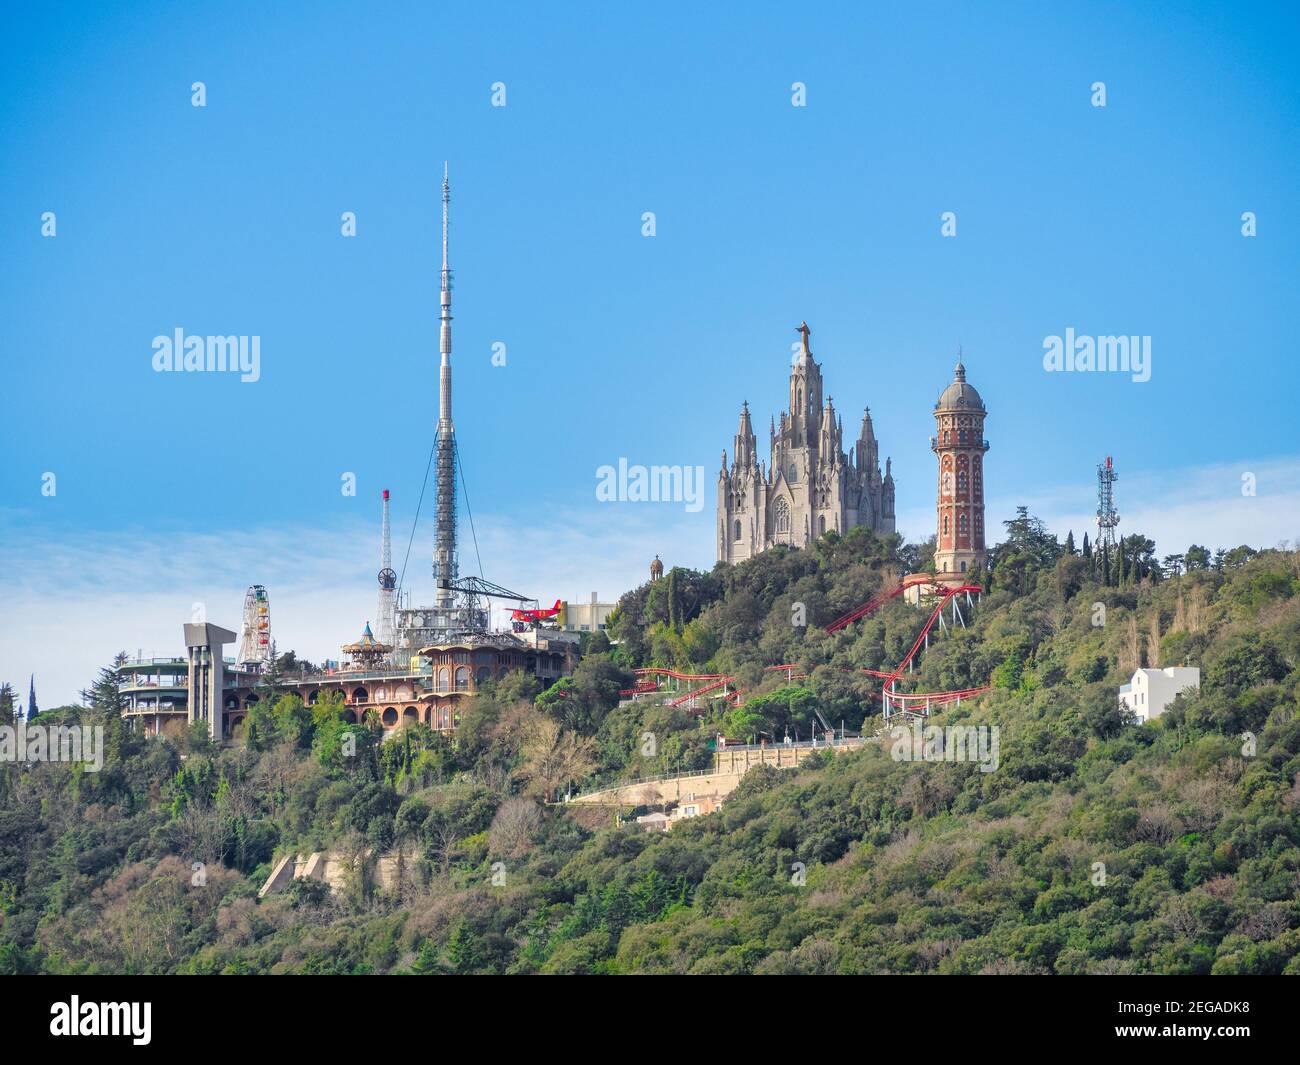 Le sommet du mont Tibidabo, le point culminant de la ville de Barcelone, en Espagne. La cathédrale du Sacré-cœur, le parc d'attractions, un sont visibles Banque D'Images